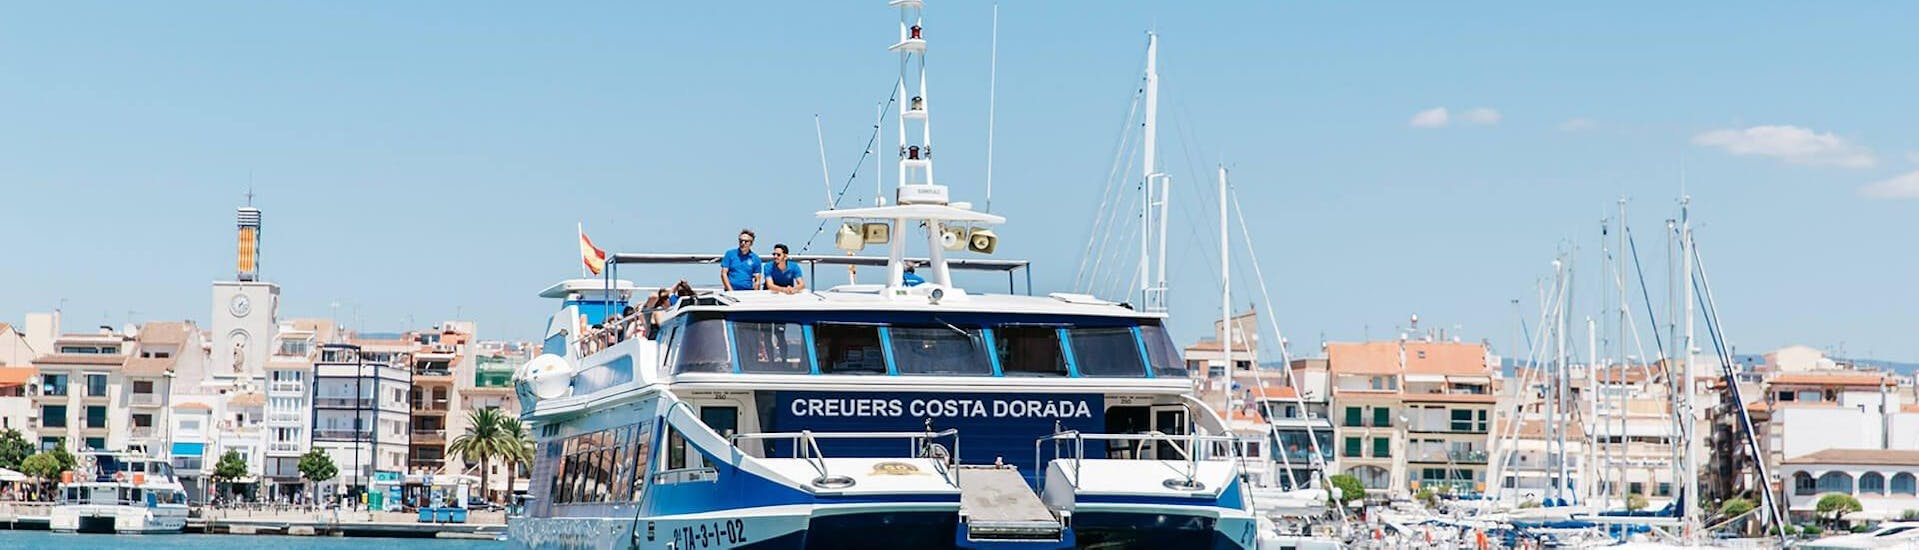 Die Besucher genießen die Aussicht während der Bootstour zwischen Cambrils und Salou organisiert von Estació Nàutica Costa Daurada.